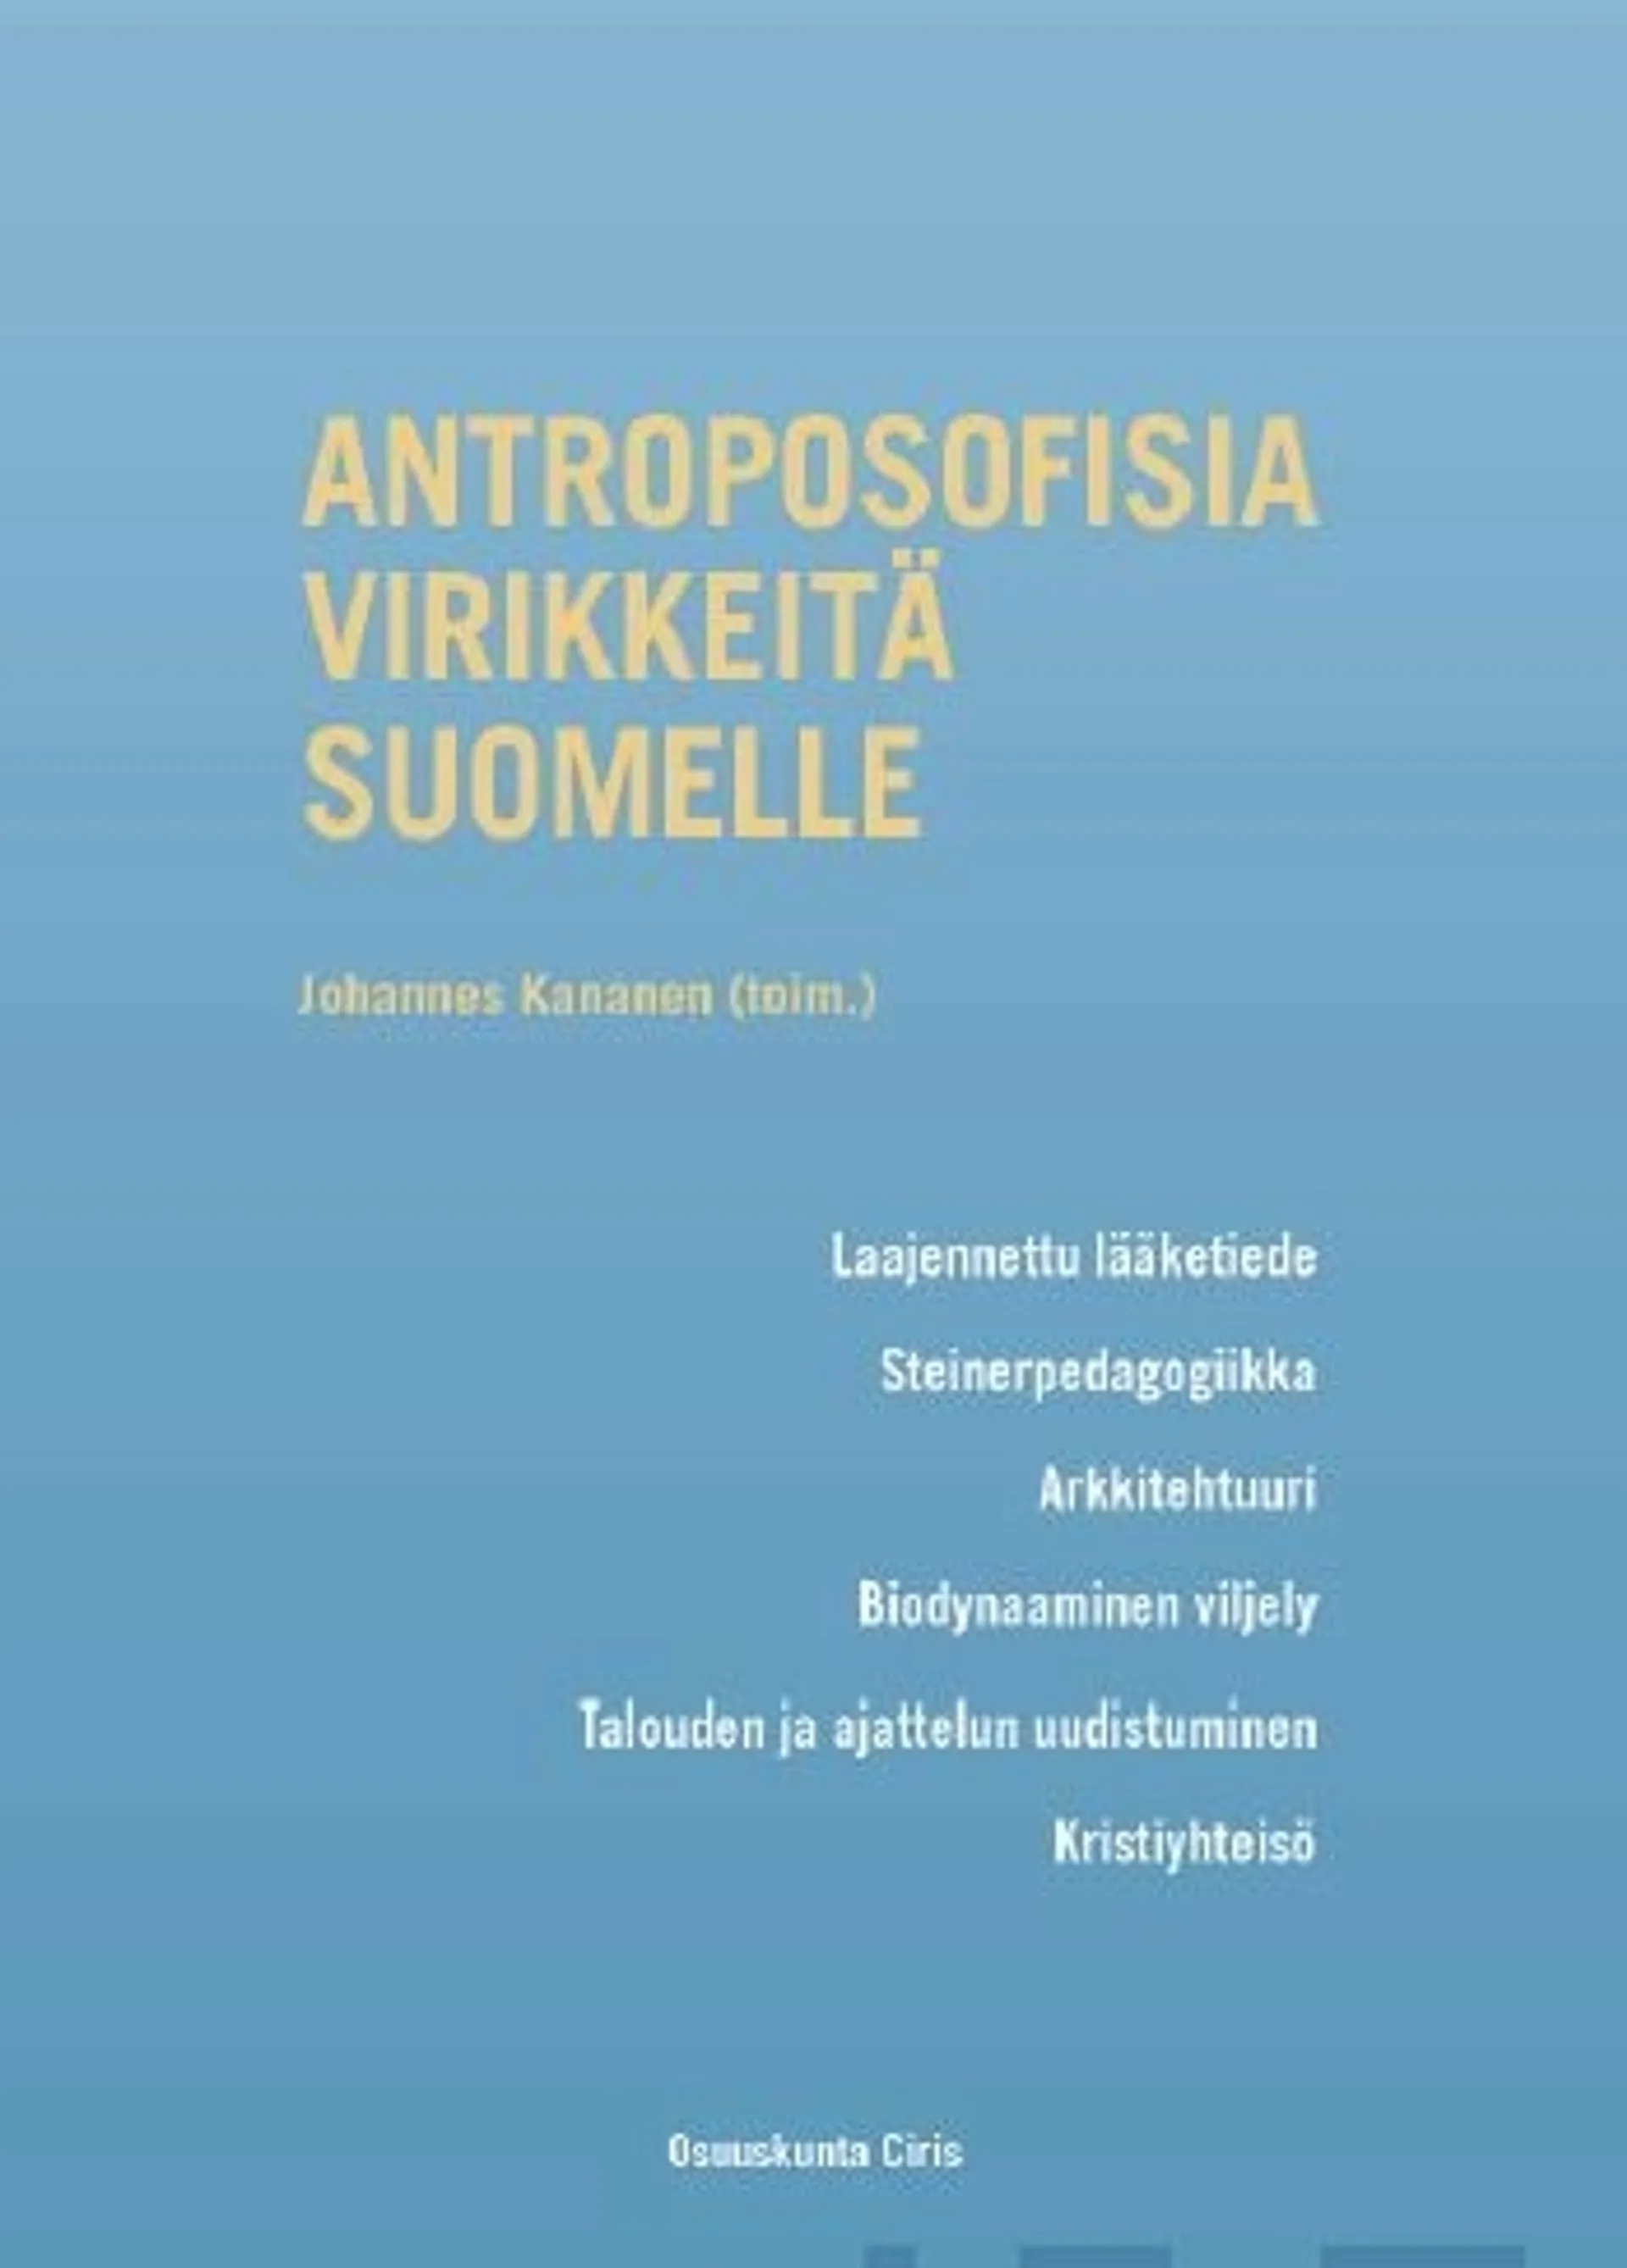 Antroposofisia virikkeitä Suomelle